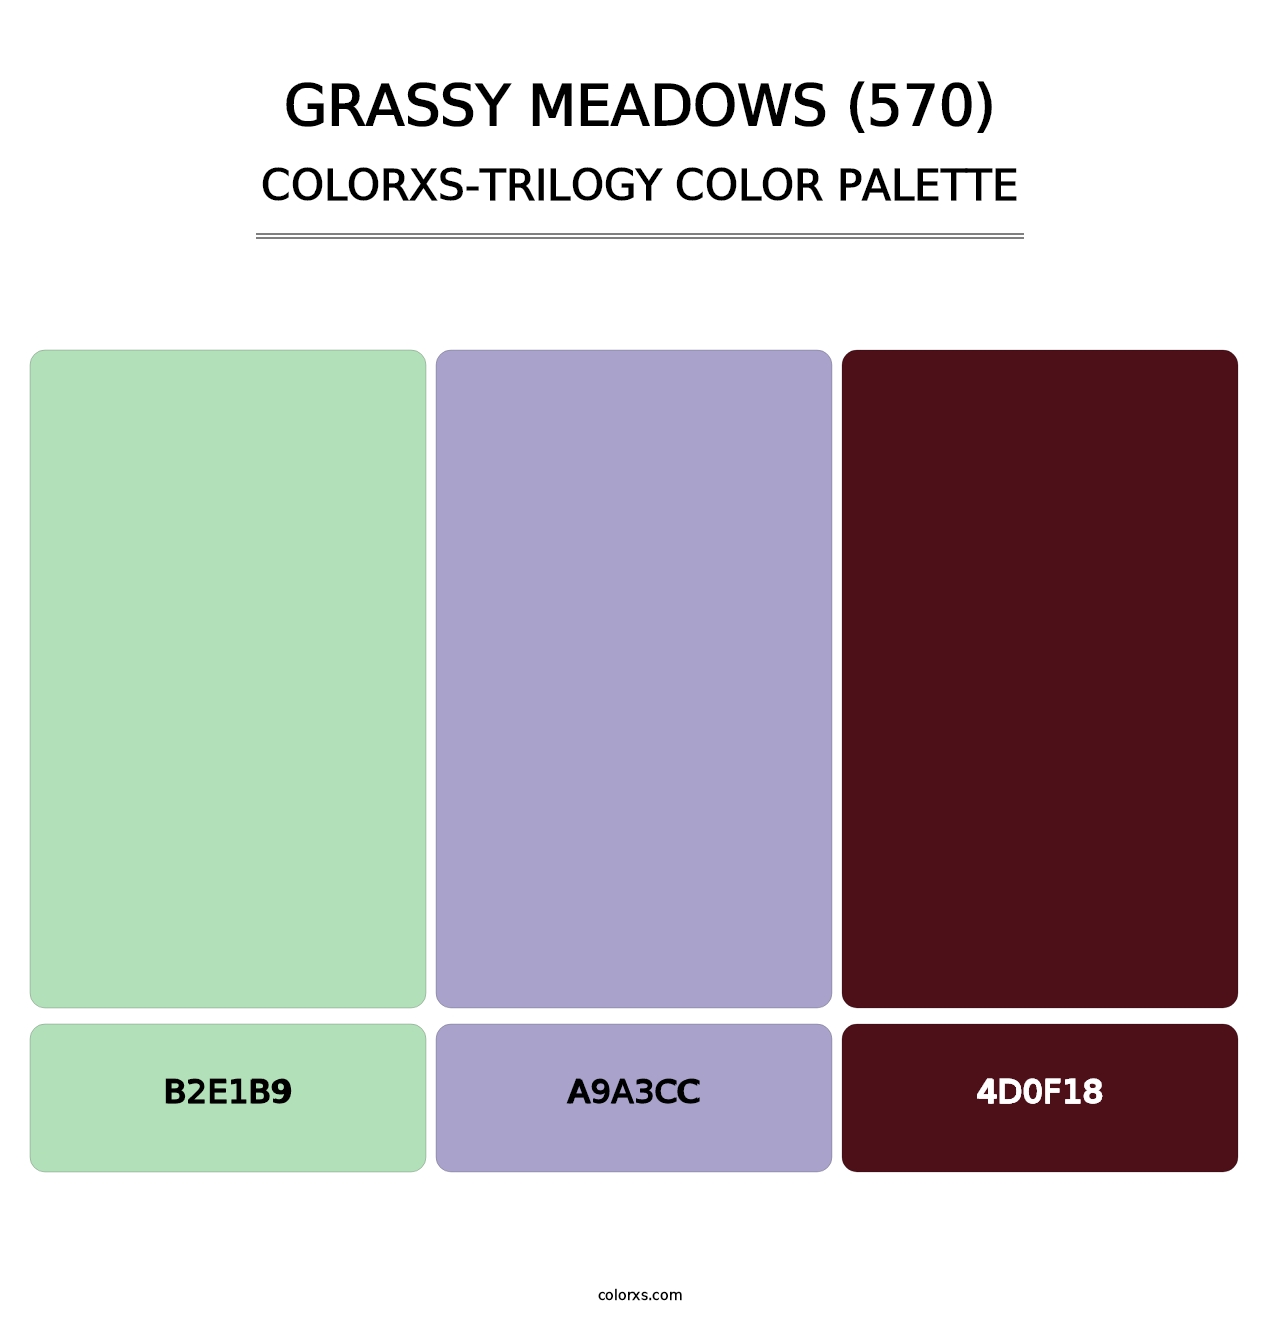 Grassy Meadows (570) - Colorxs Trilogy Palette